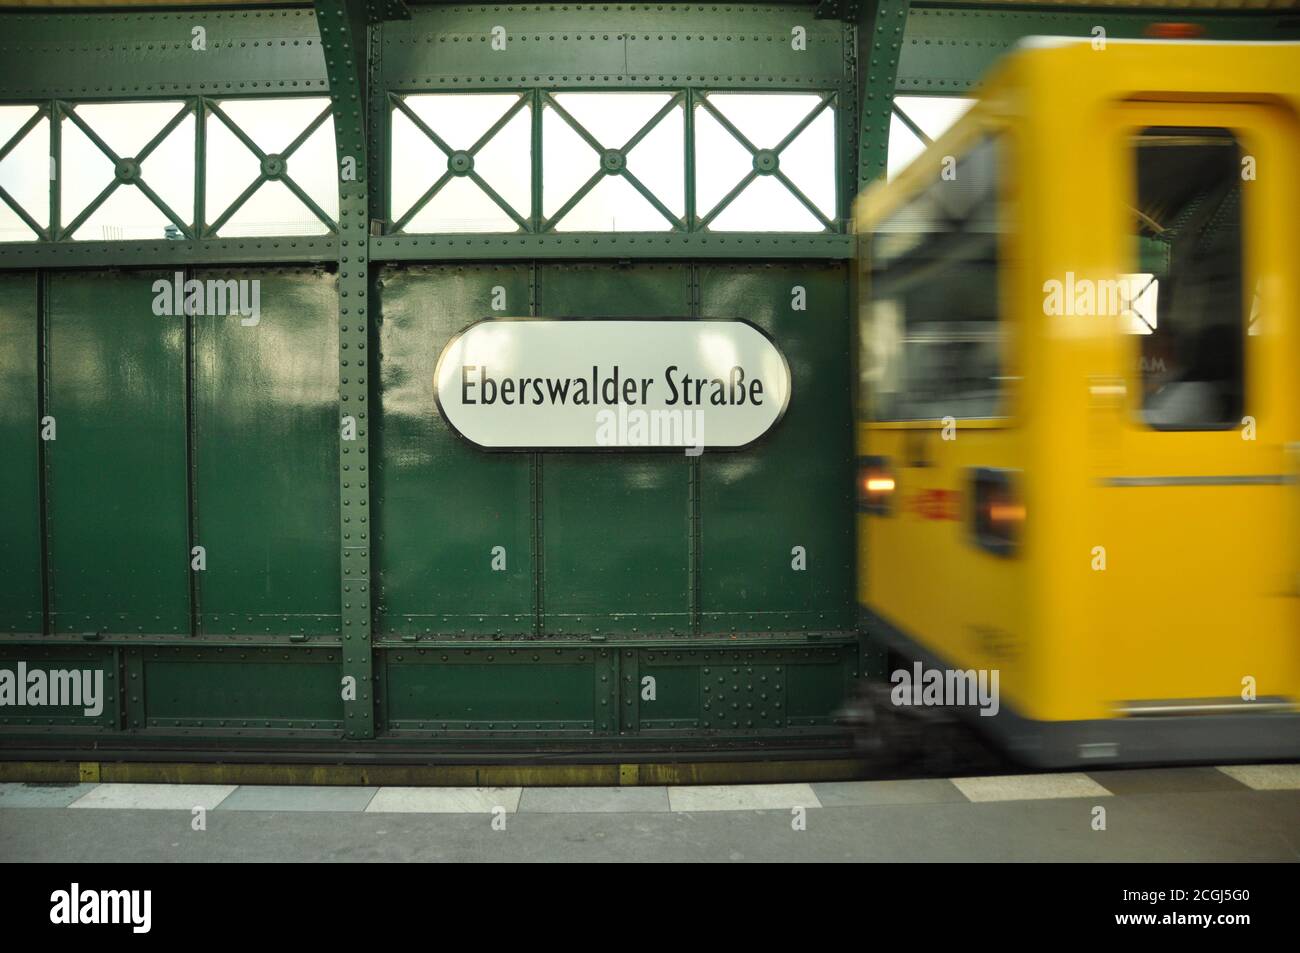 Eberswalder Straße, Berlino. Stazione ferroviaria della U-Bahn. Storico elevato binari ferroviari lungo Schönhauserallee, Prenzlauer Berg Foto Stock